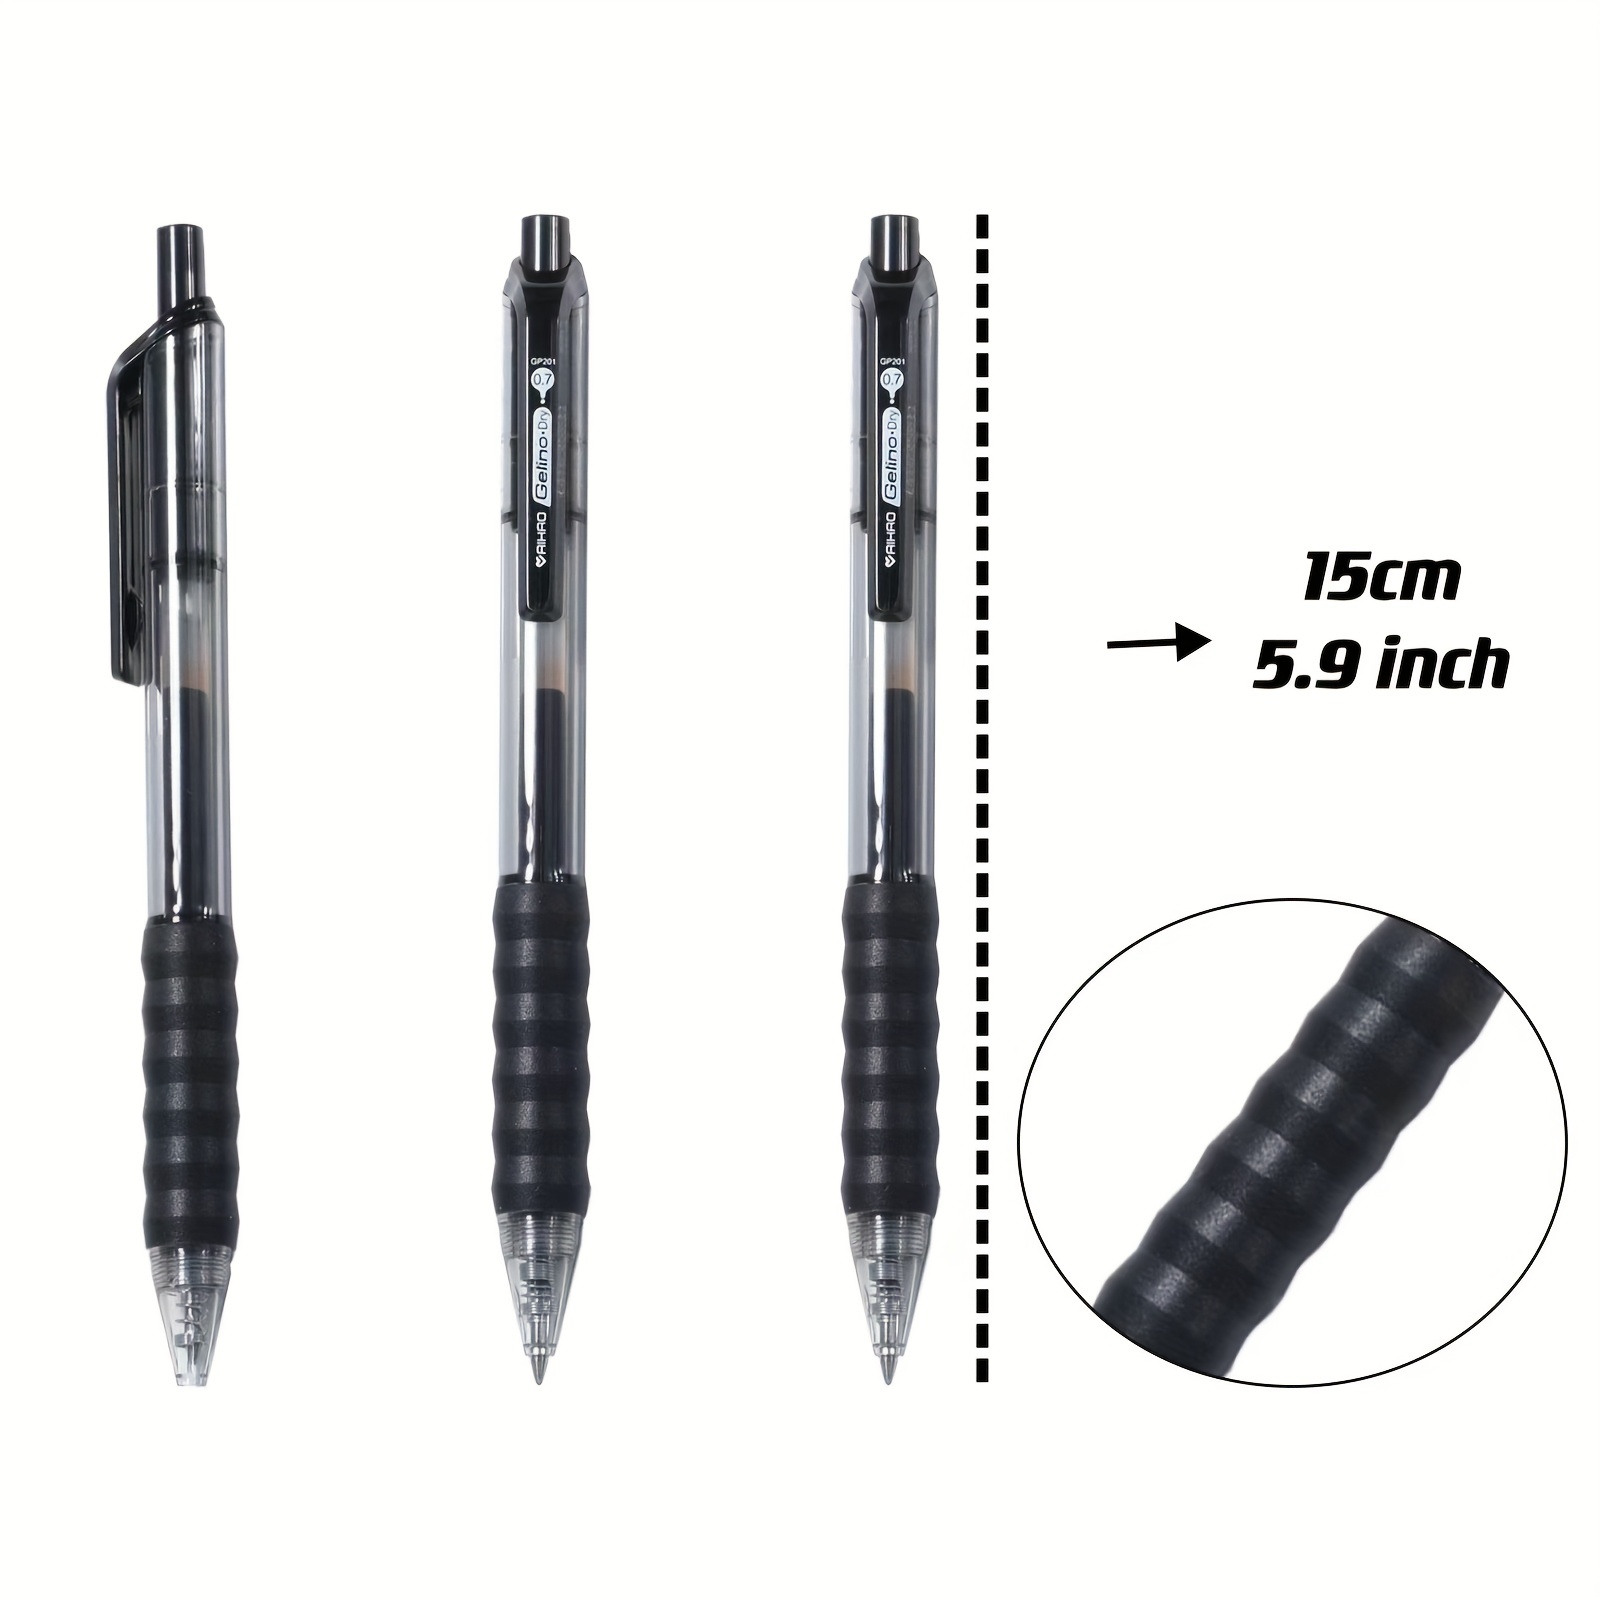 AIHAOの黒色ジェルペン12本セット。中字（0.7mm）で 滑らかな書き味の